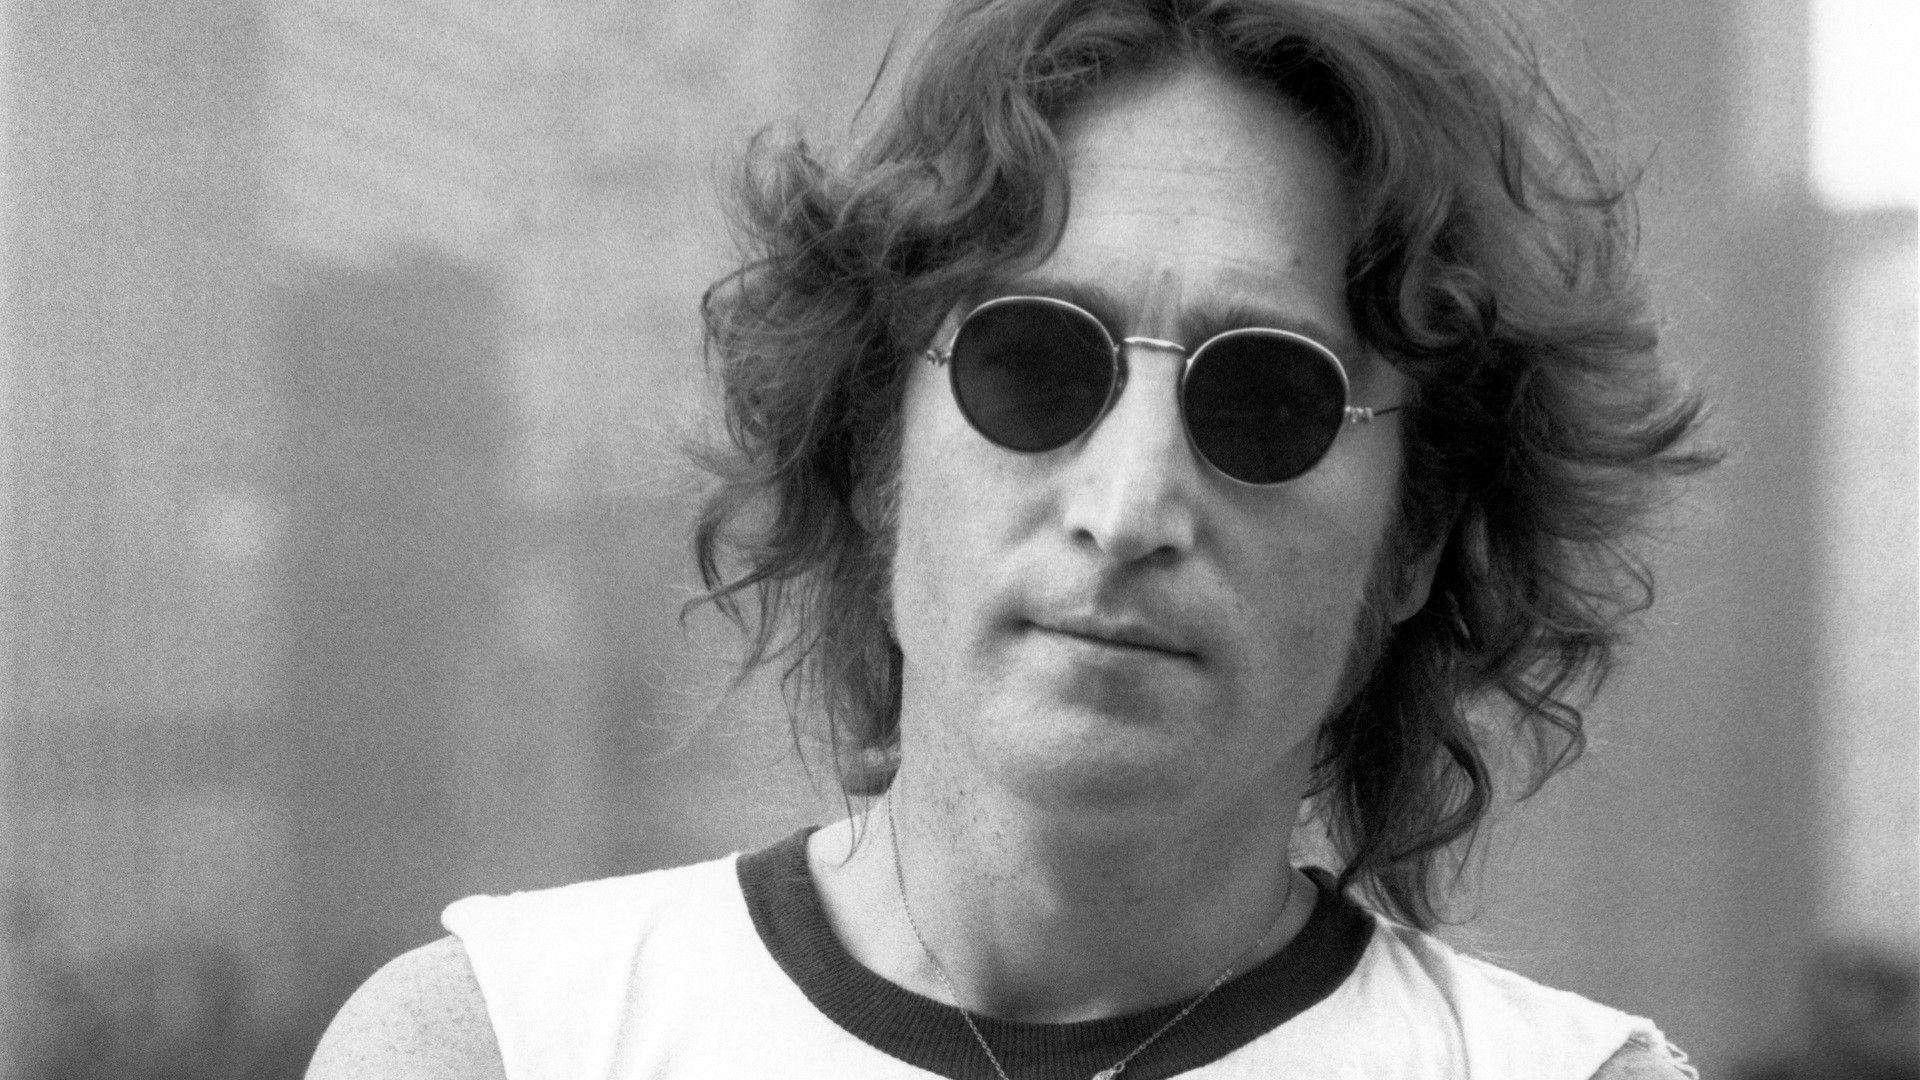 Free John Lennon desktop wallpaper. John Lennon wallpaper